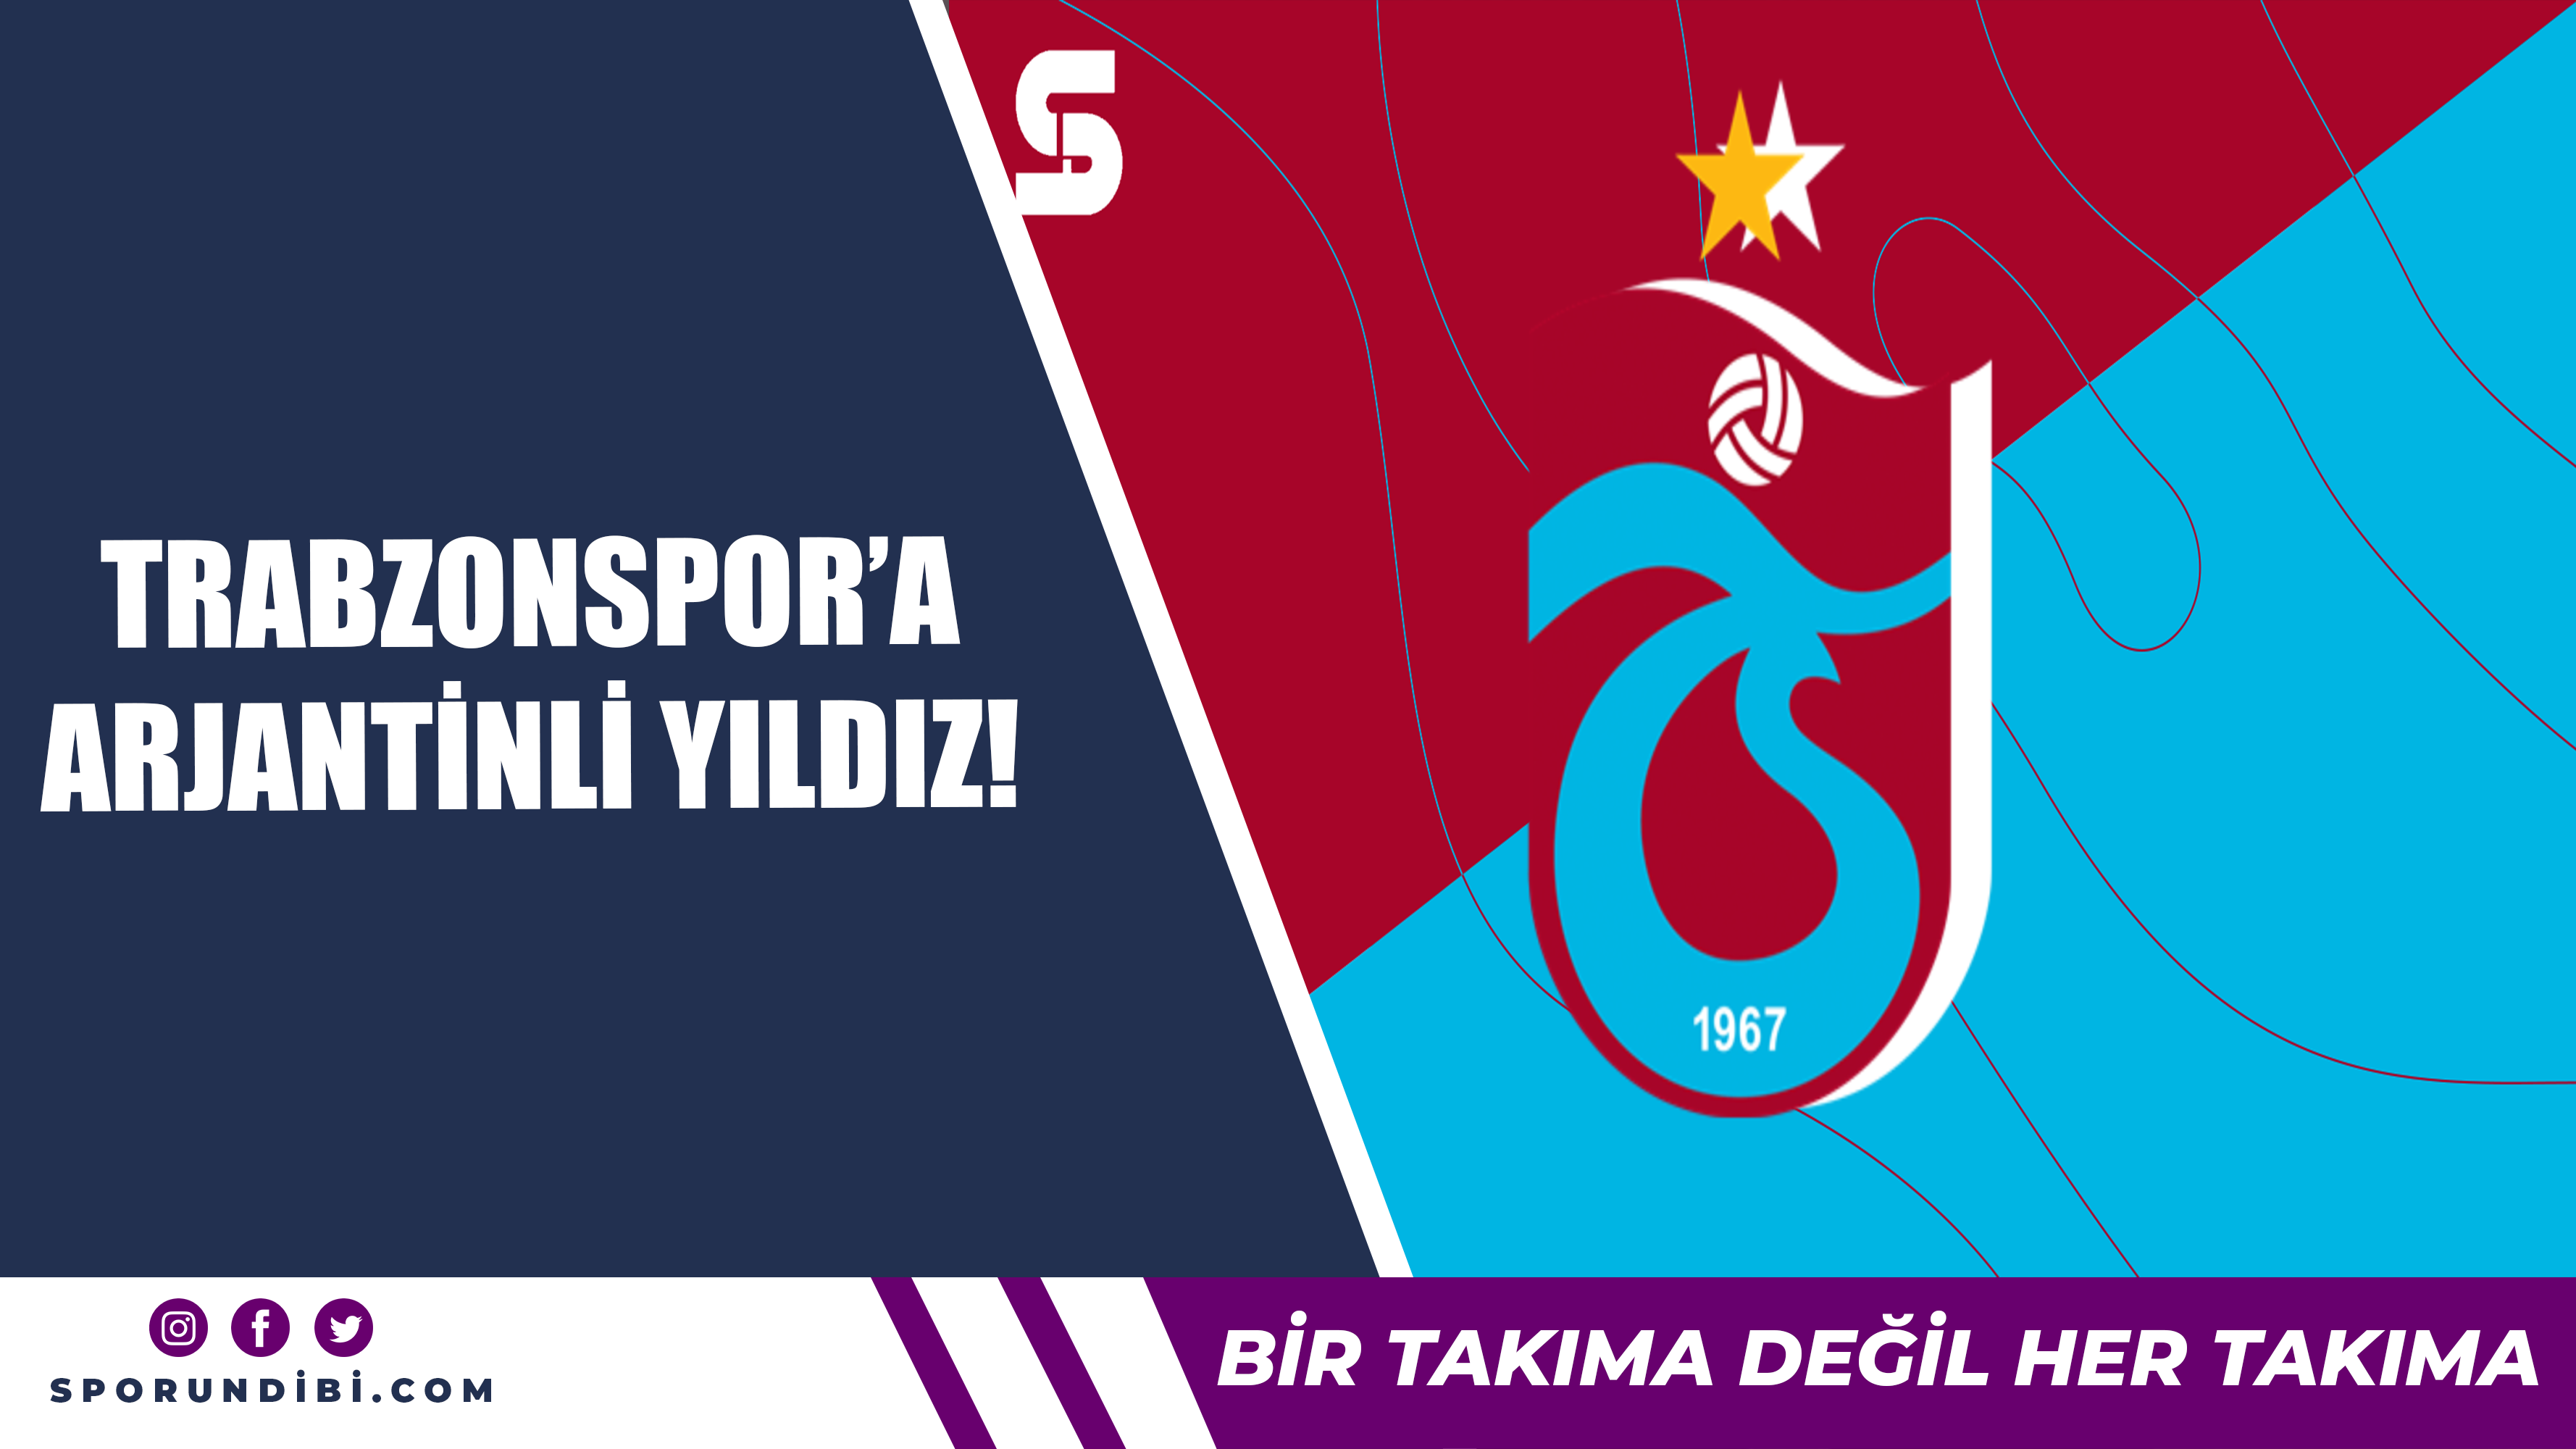 Trabzonspor'a Arjantinli yıldız!